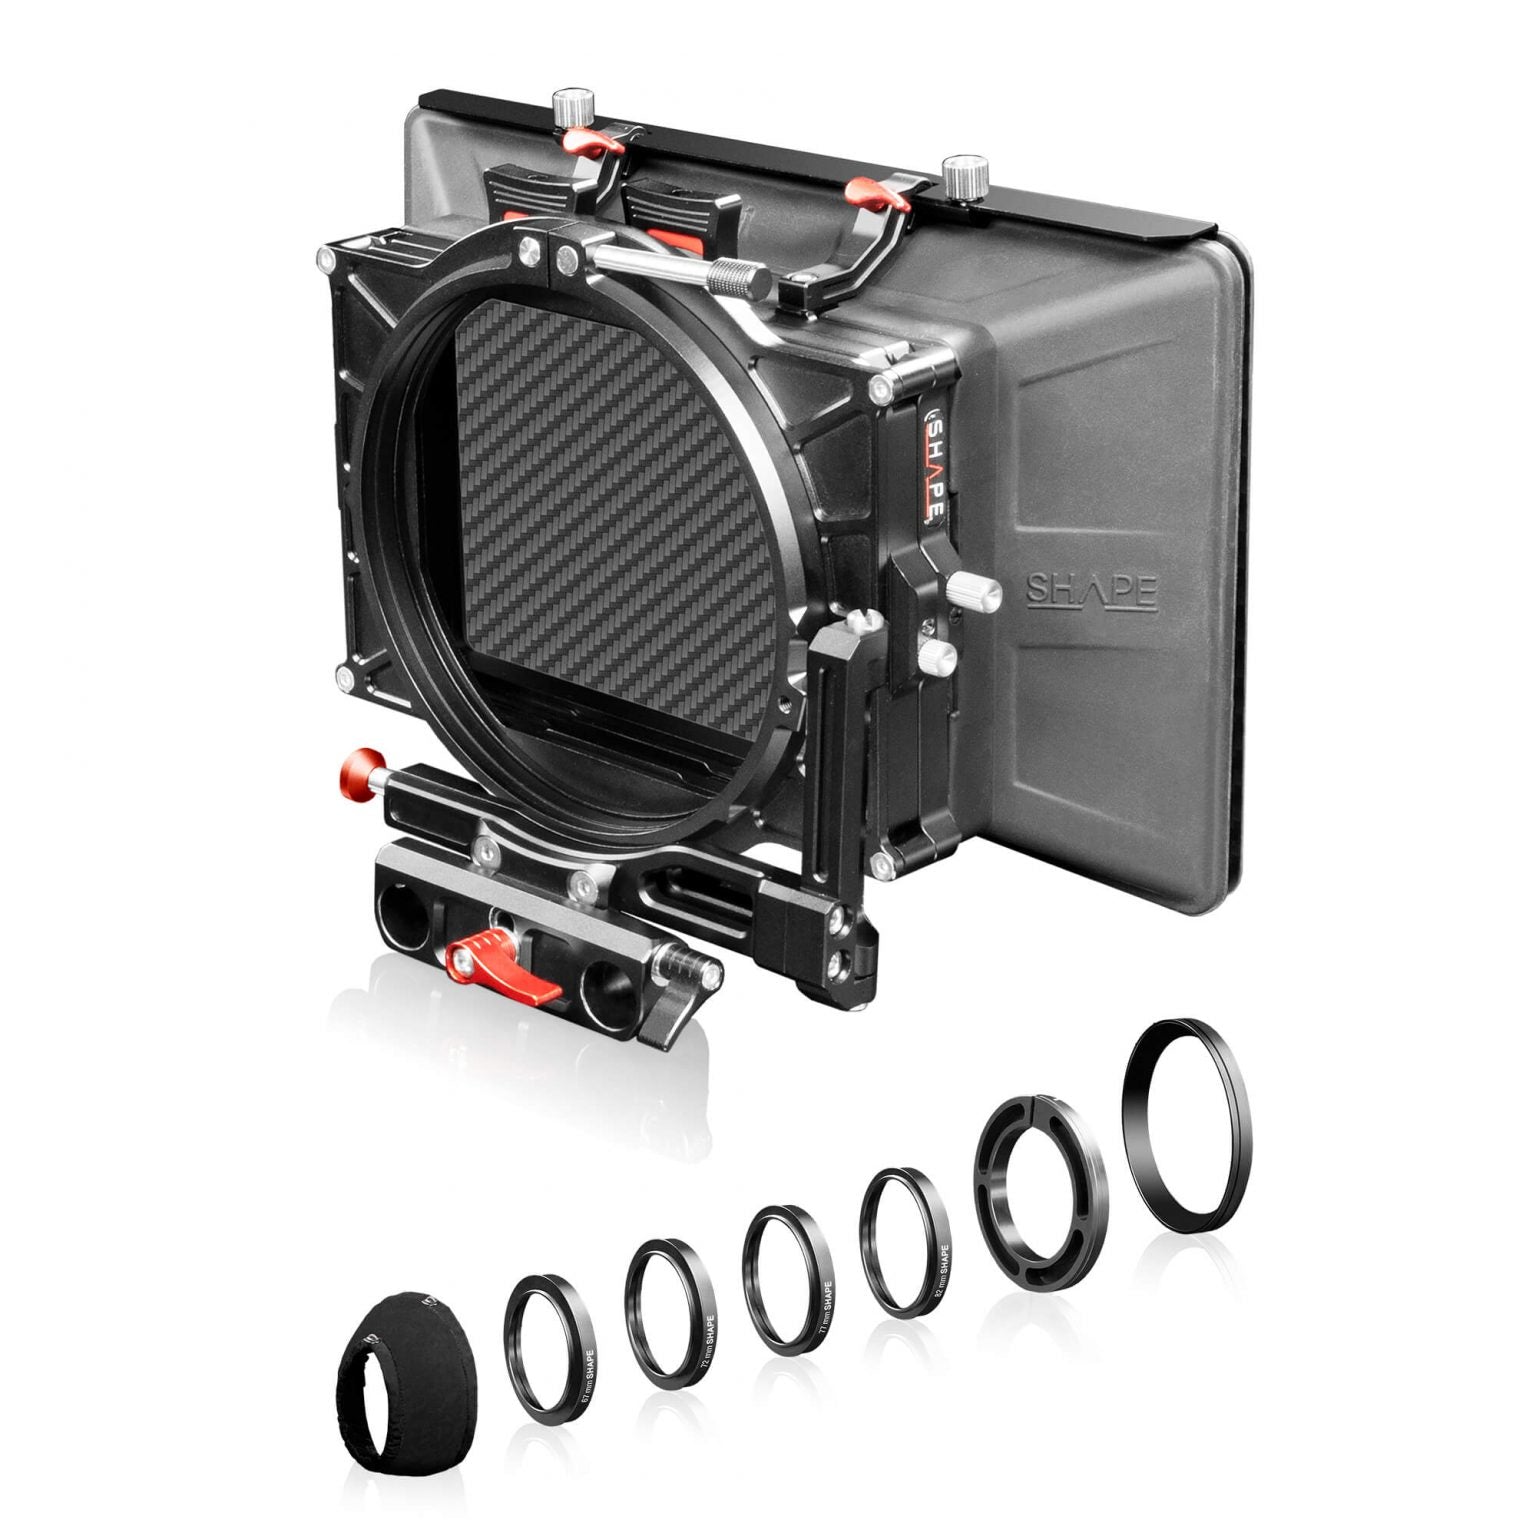 Kit de montage de caméra SHAPE pour Blackmagic Ursa Mini